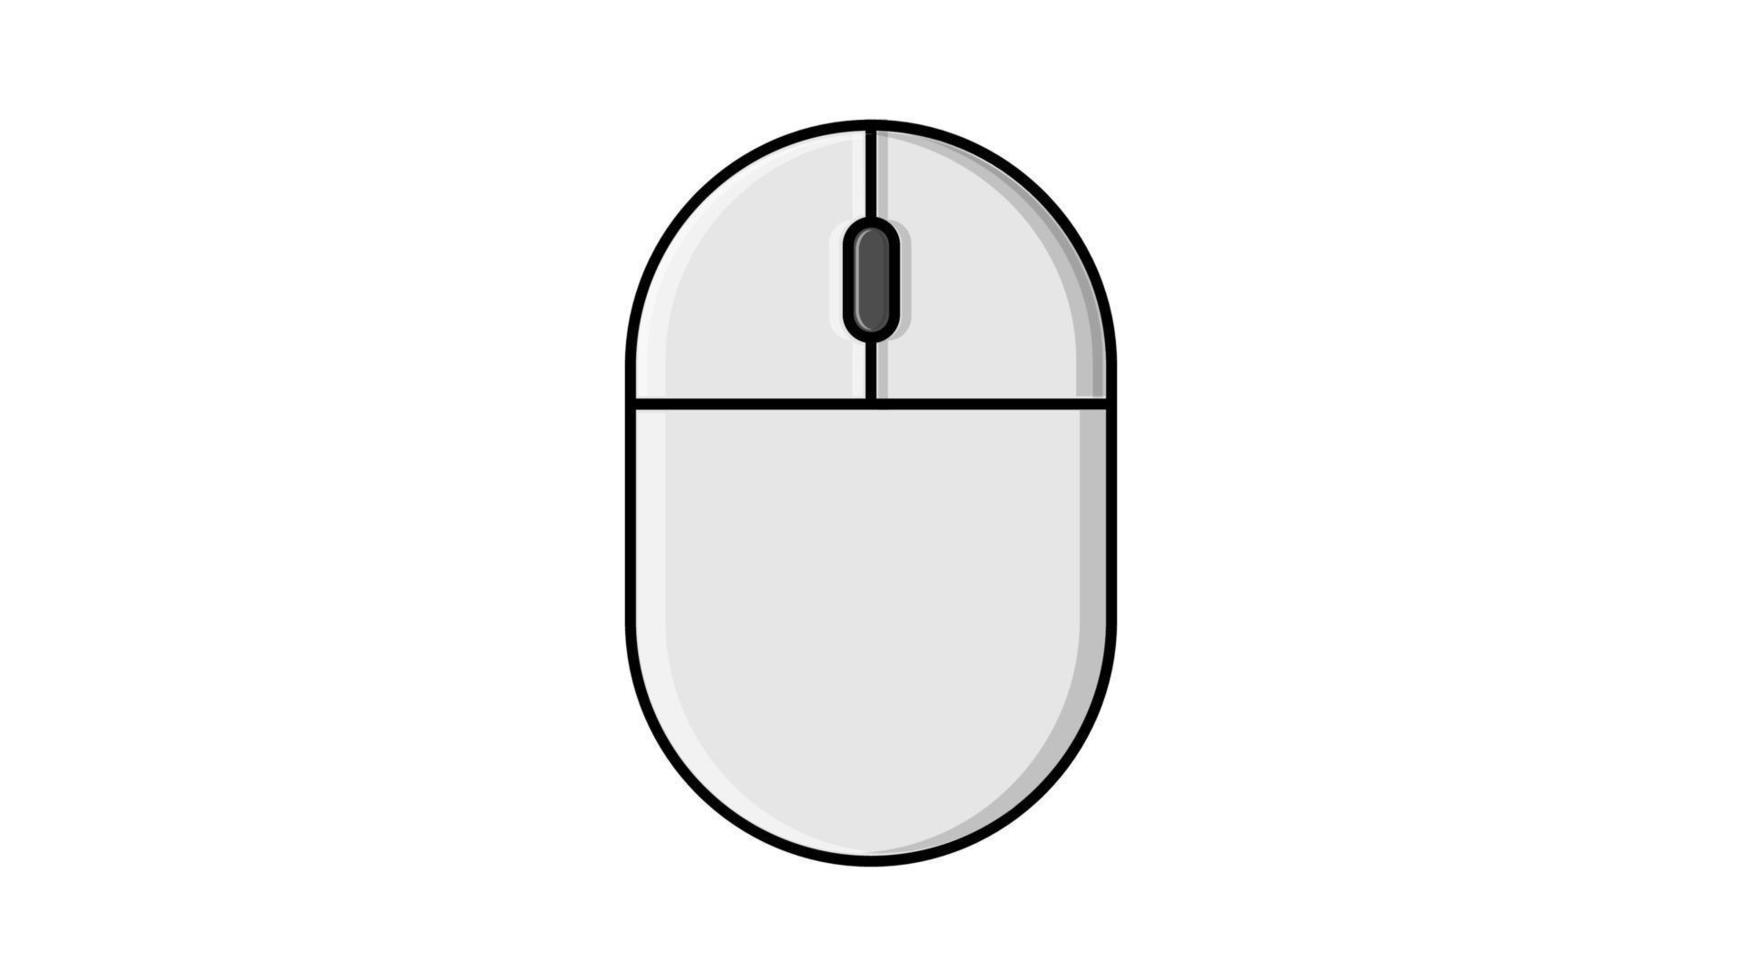 ilustración vectorial de un icono plano blanco lineal de un ratón de ordenador inalámbrico digital con botones y rueda sobre un fondo blanco con un trazo negro. concepto de tecnologías digitales informáticas vector